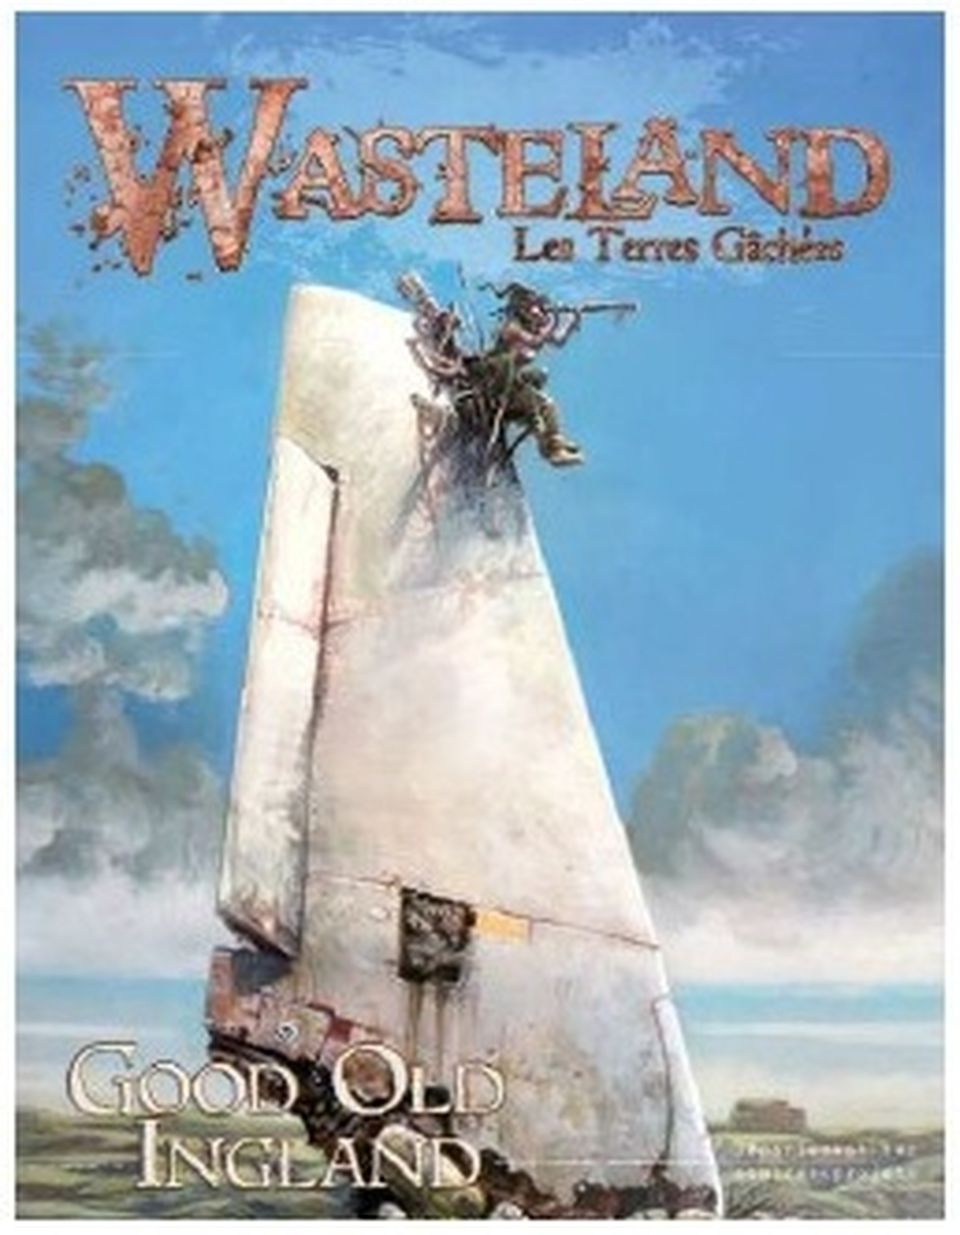 Wasteland : Good Old Ingland image